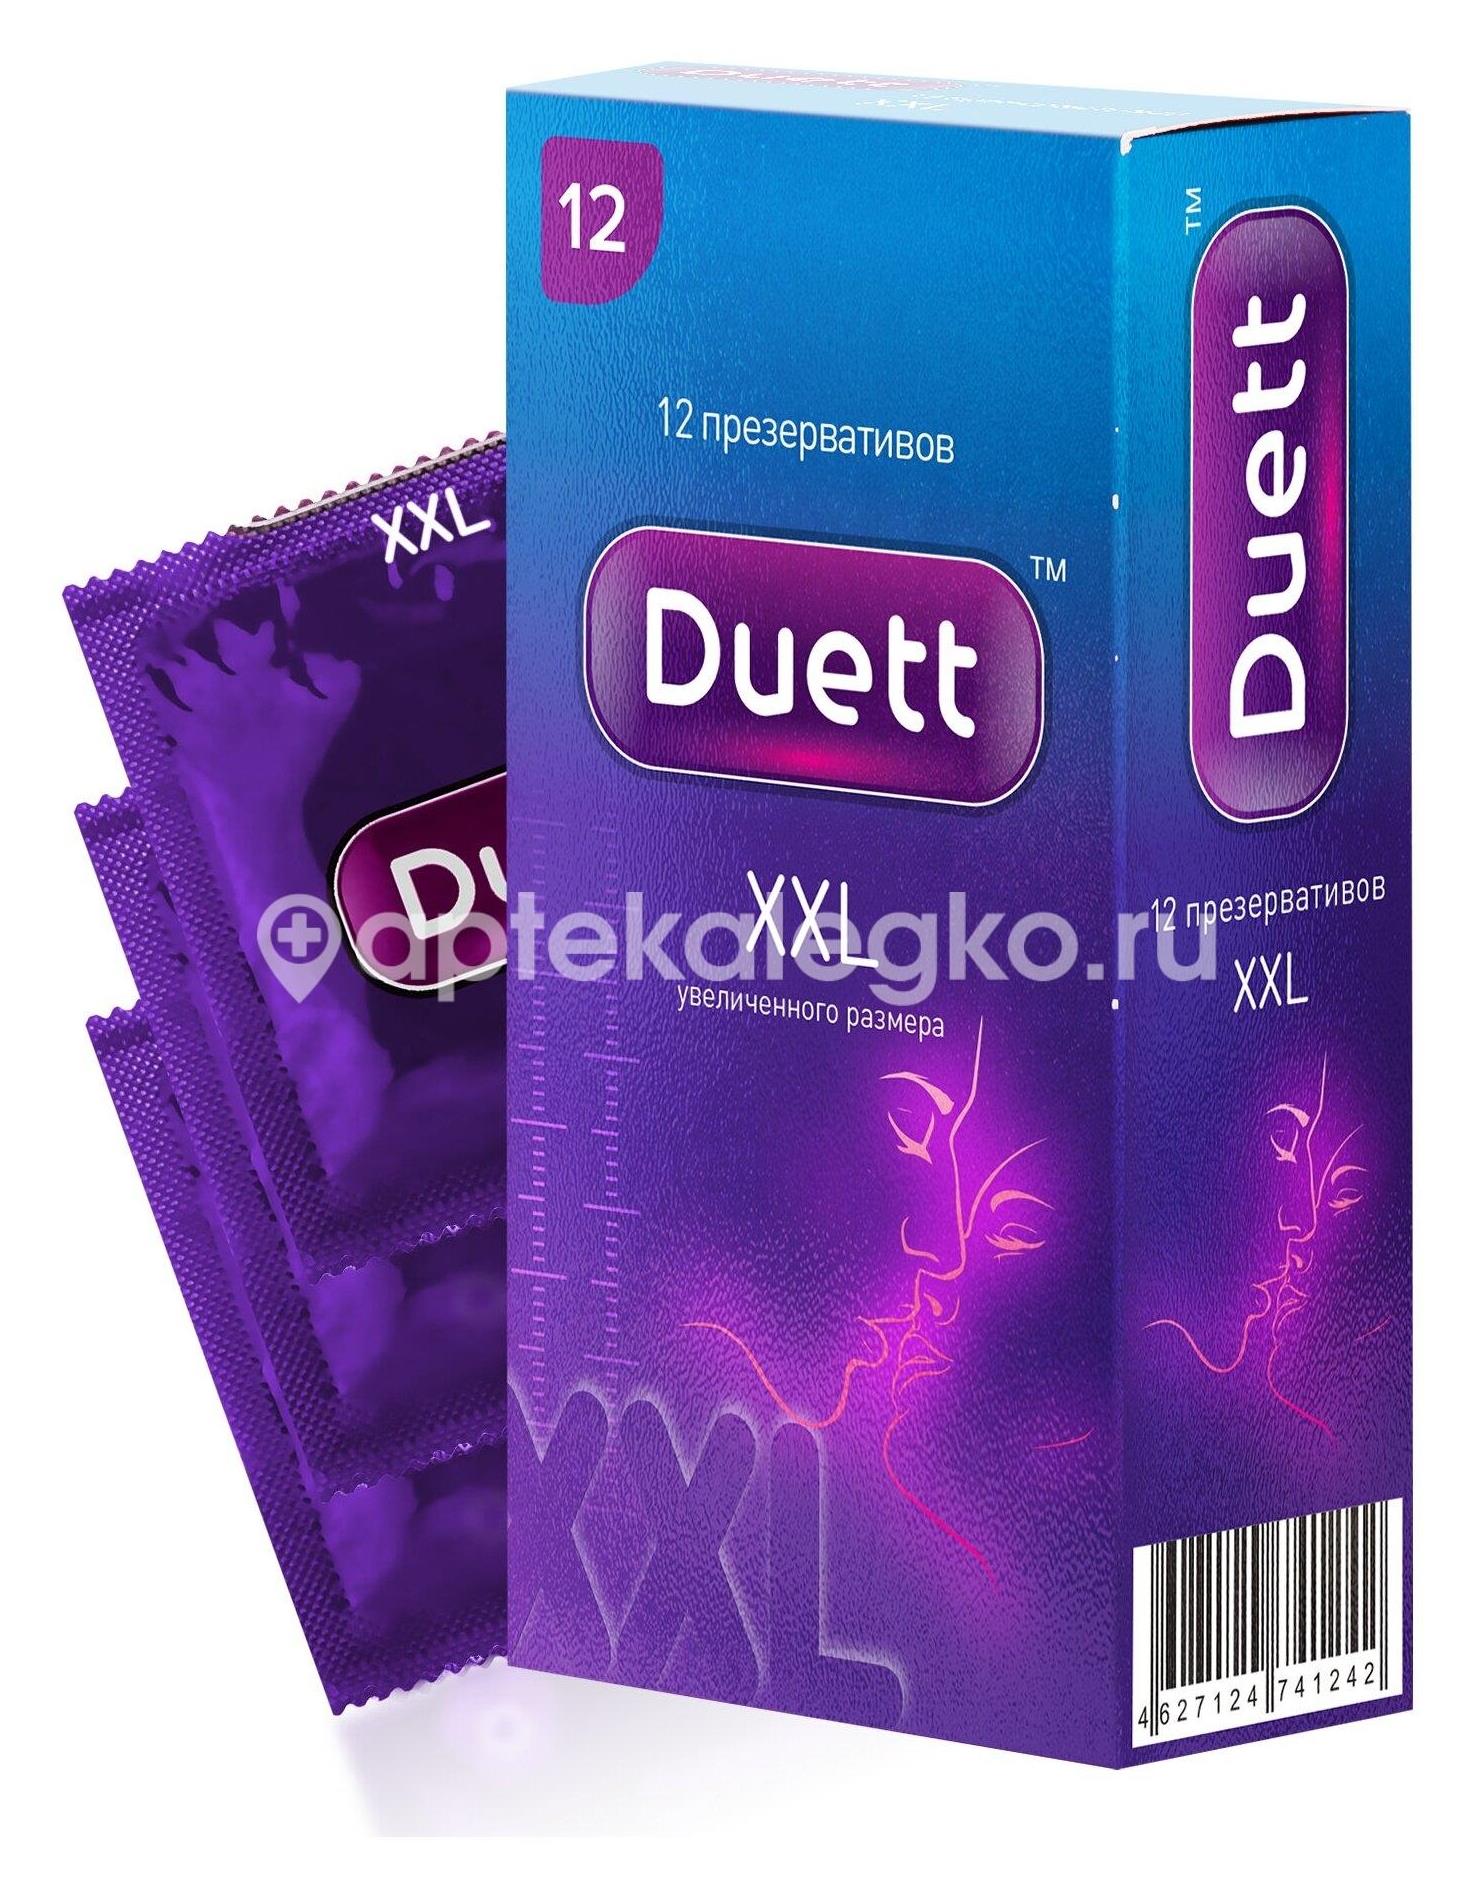 Duett xxl презервативы увеличенного размера 12 шт. [duett] - 1